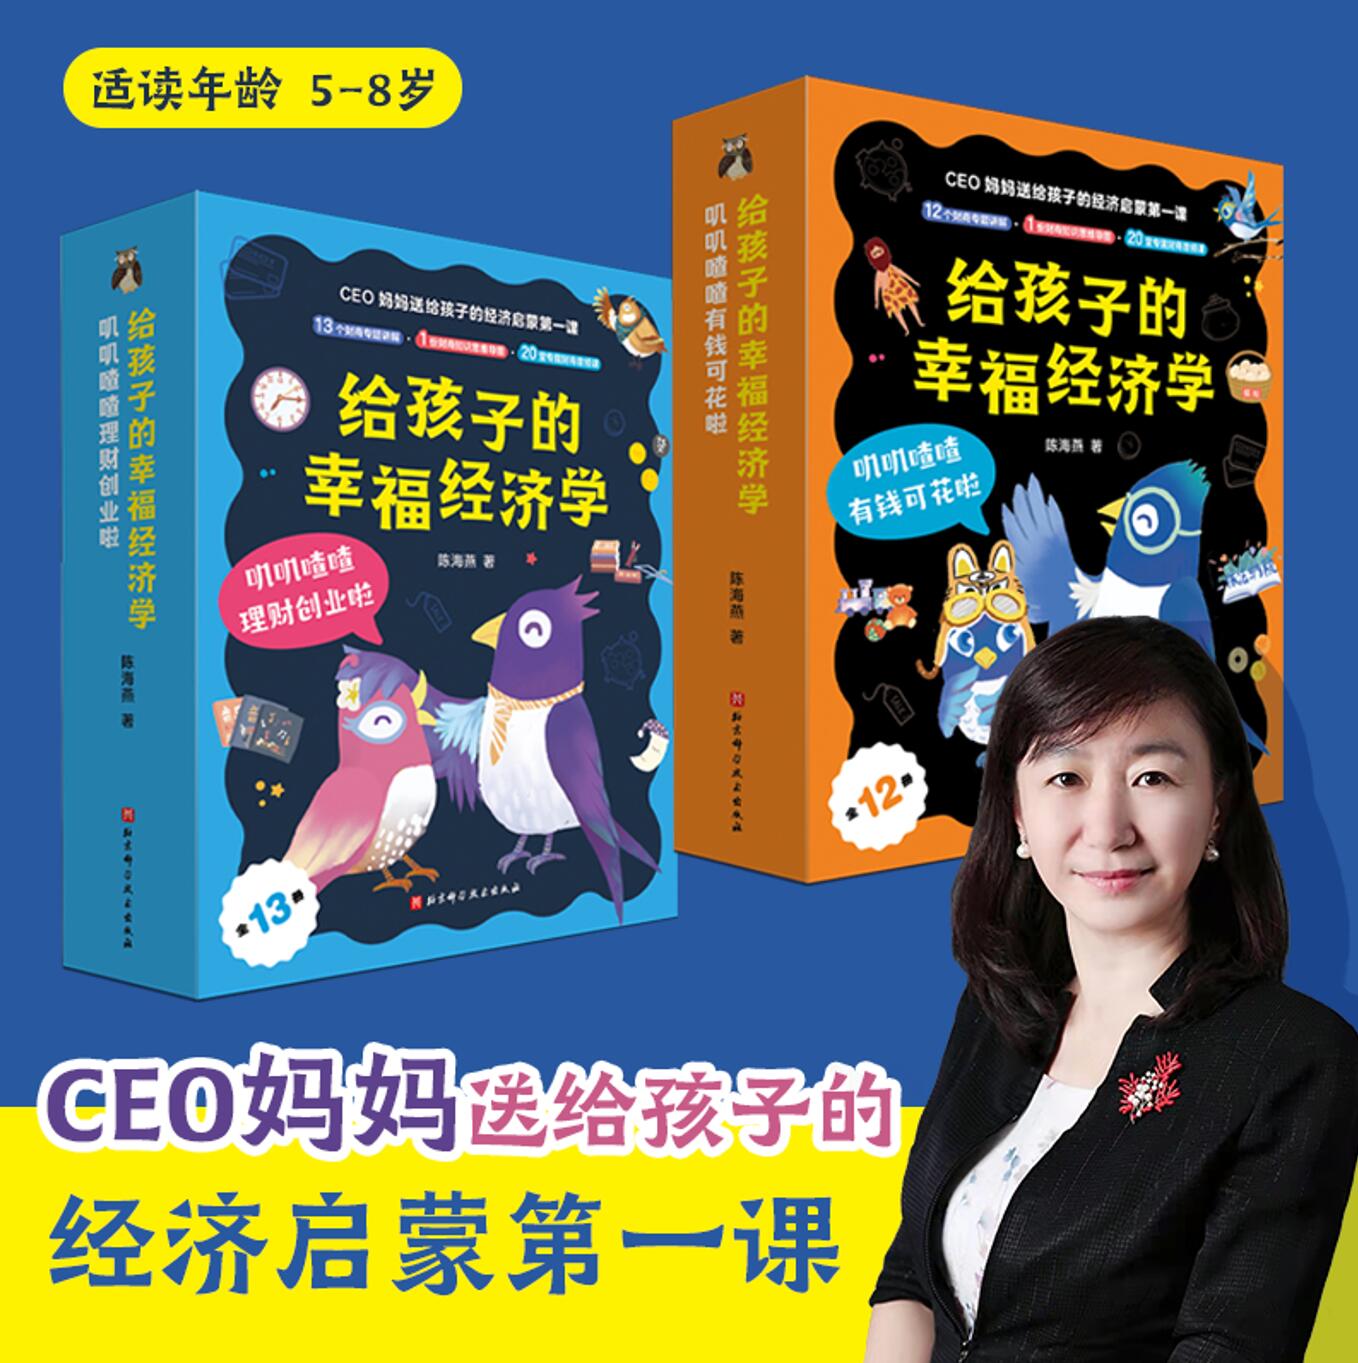 给孩子的幸福经济学 全25册  叽叽喳喳有钱可花啦12册+叽叽喳喳理财创业啦13册 给5-8岁孩子阅读的儿童财商教育绘本 北京科学技术